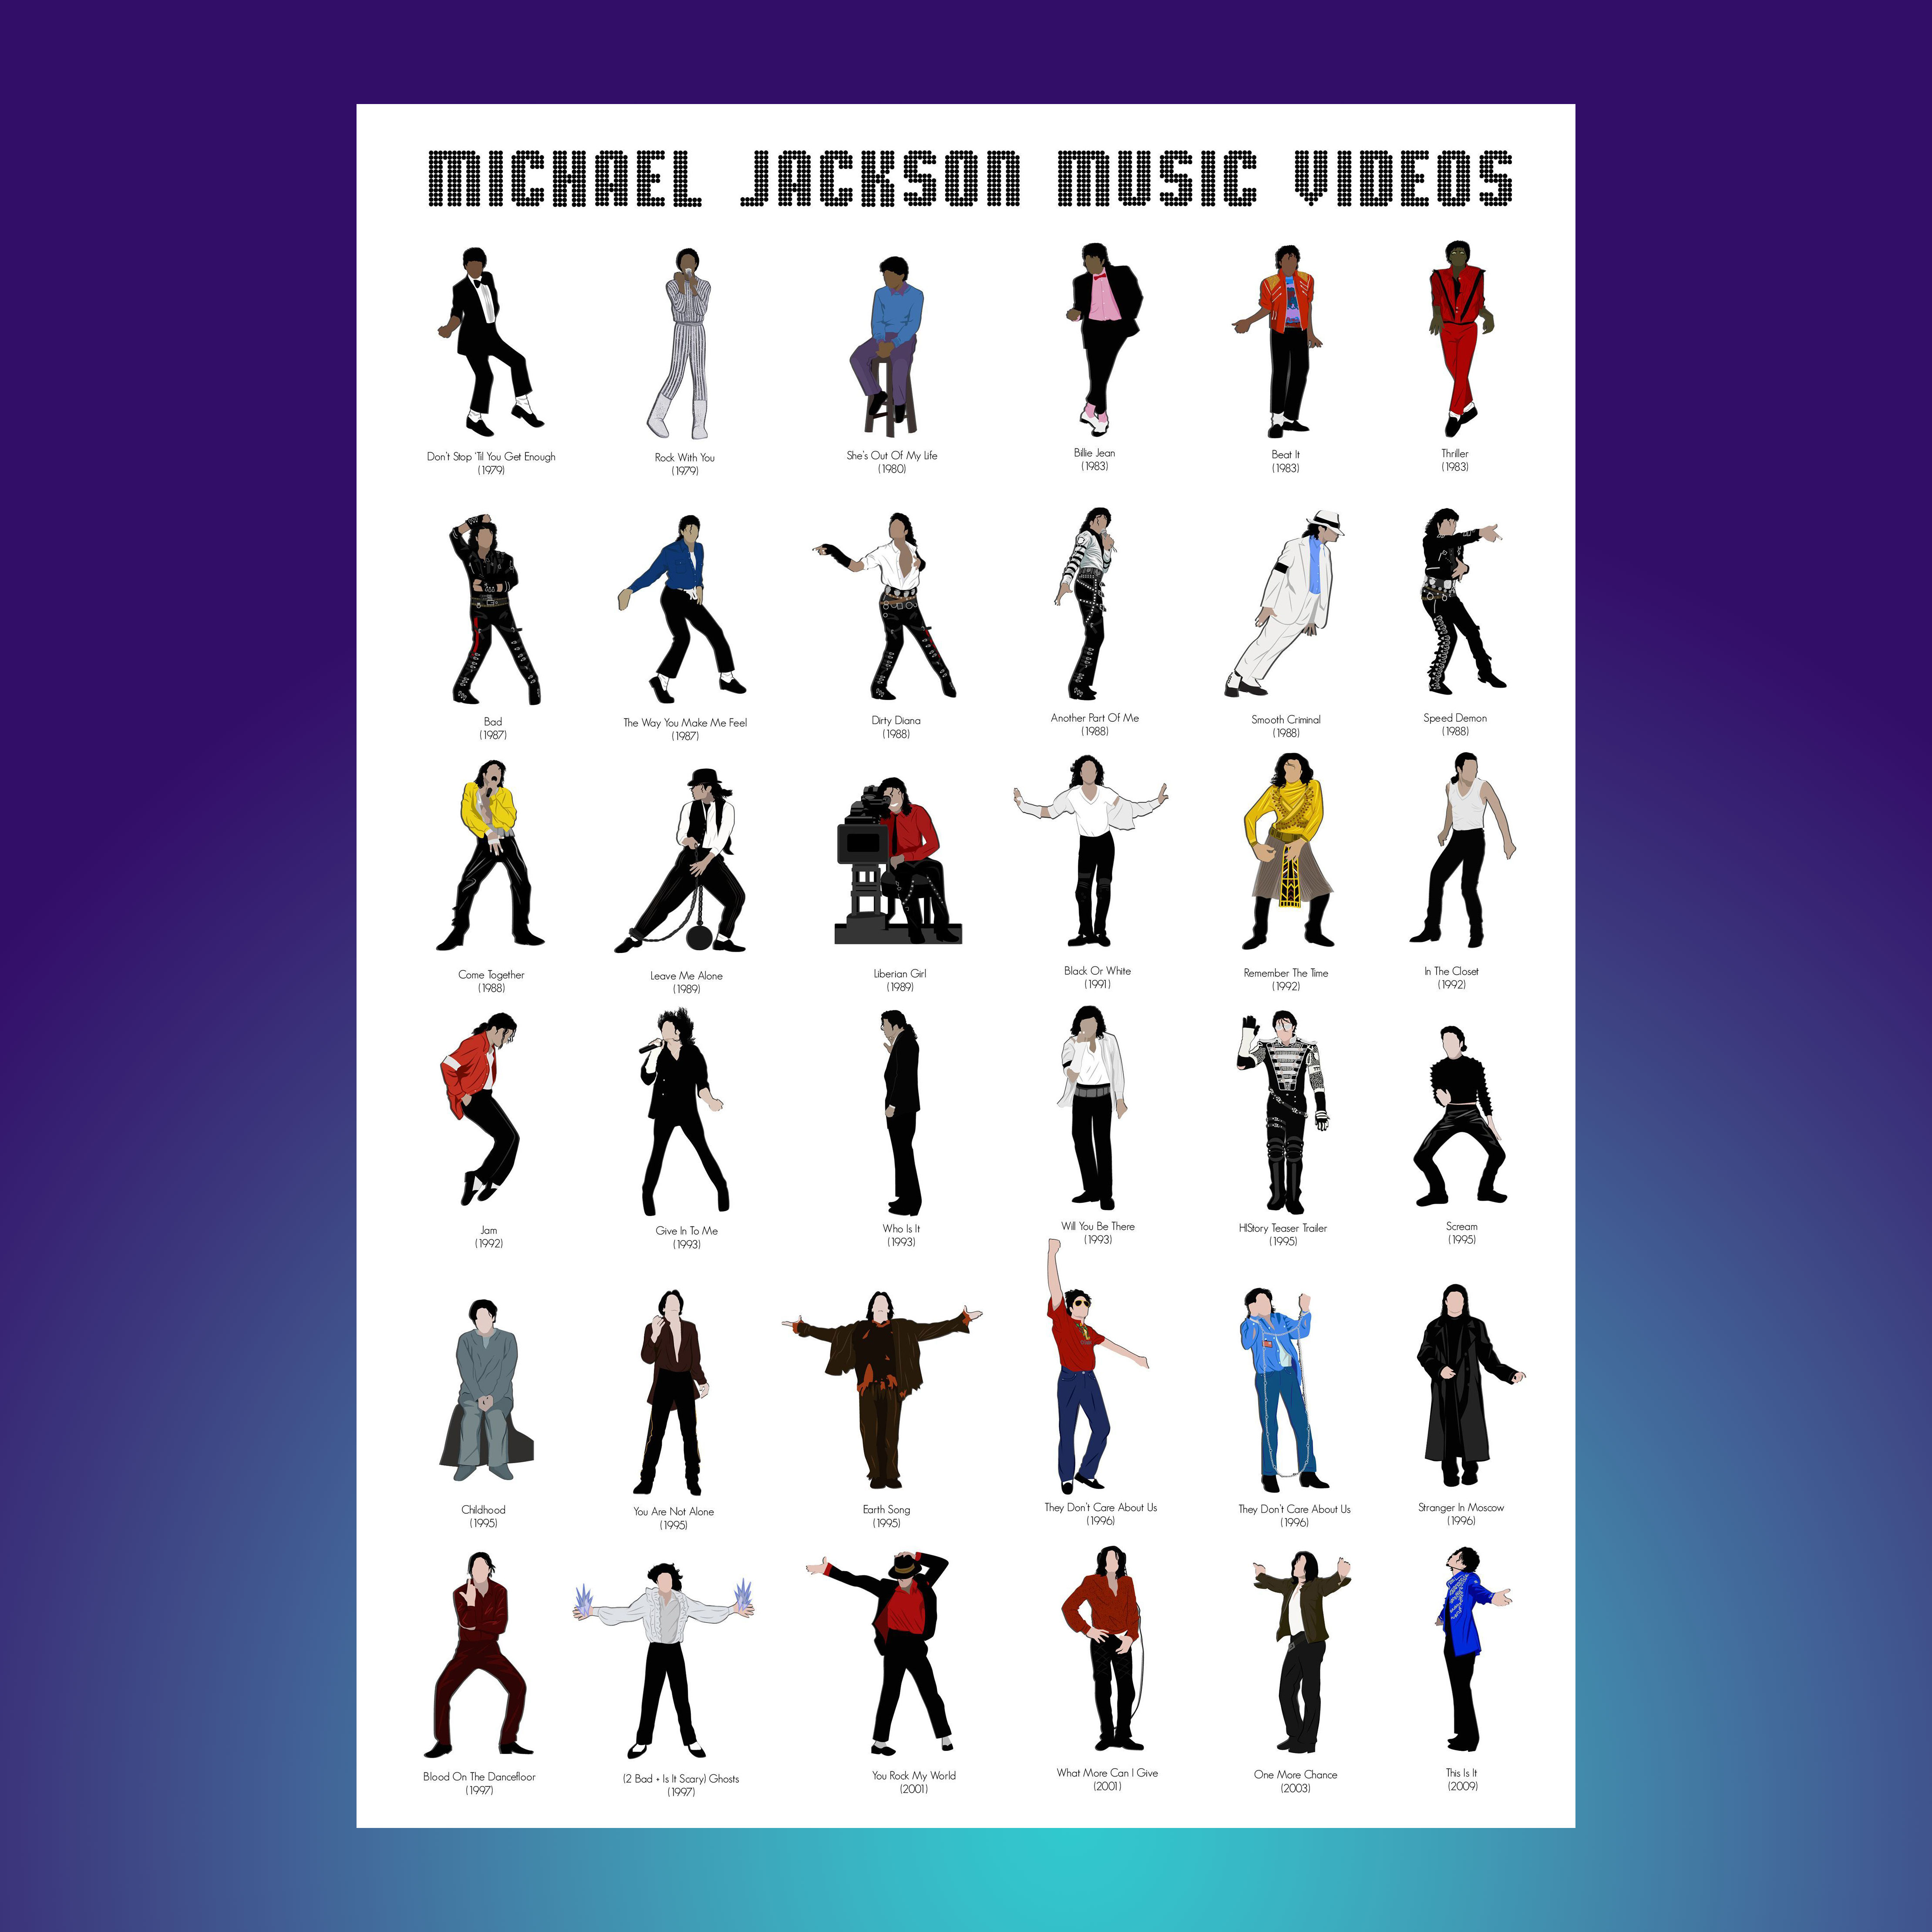 迈克尔杰克逊标志性舞蹈海报 流行音乐歌星MJ专辑MV图鉴明星墙画